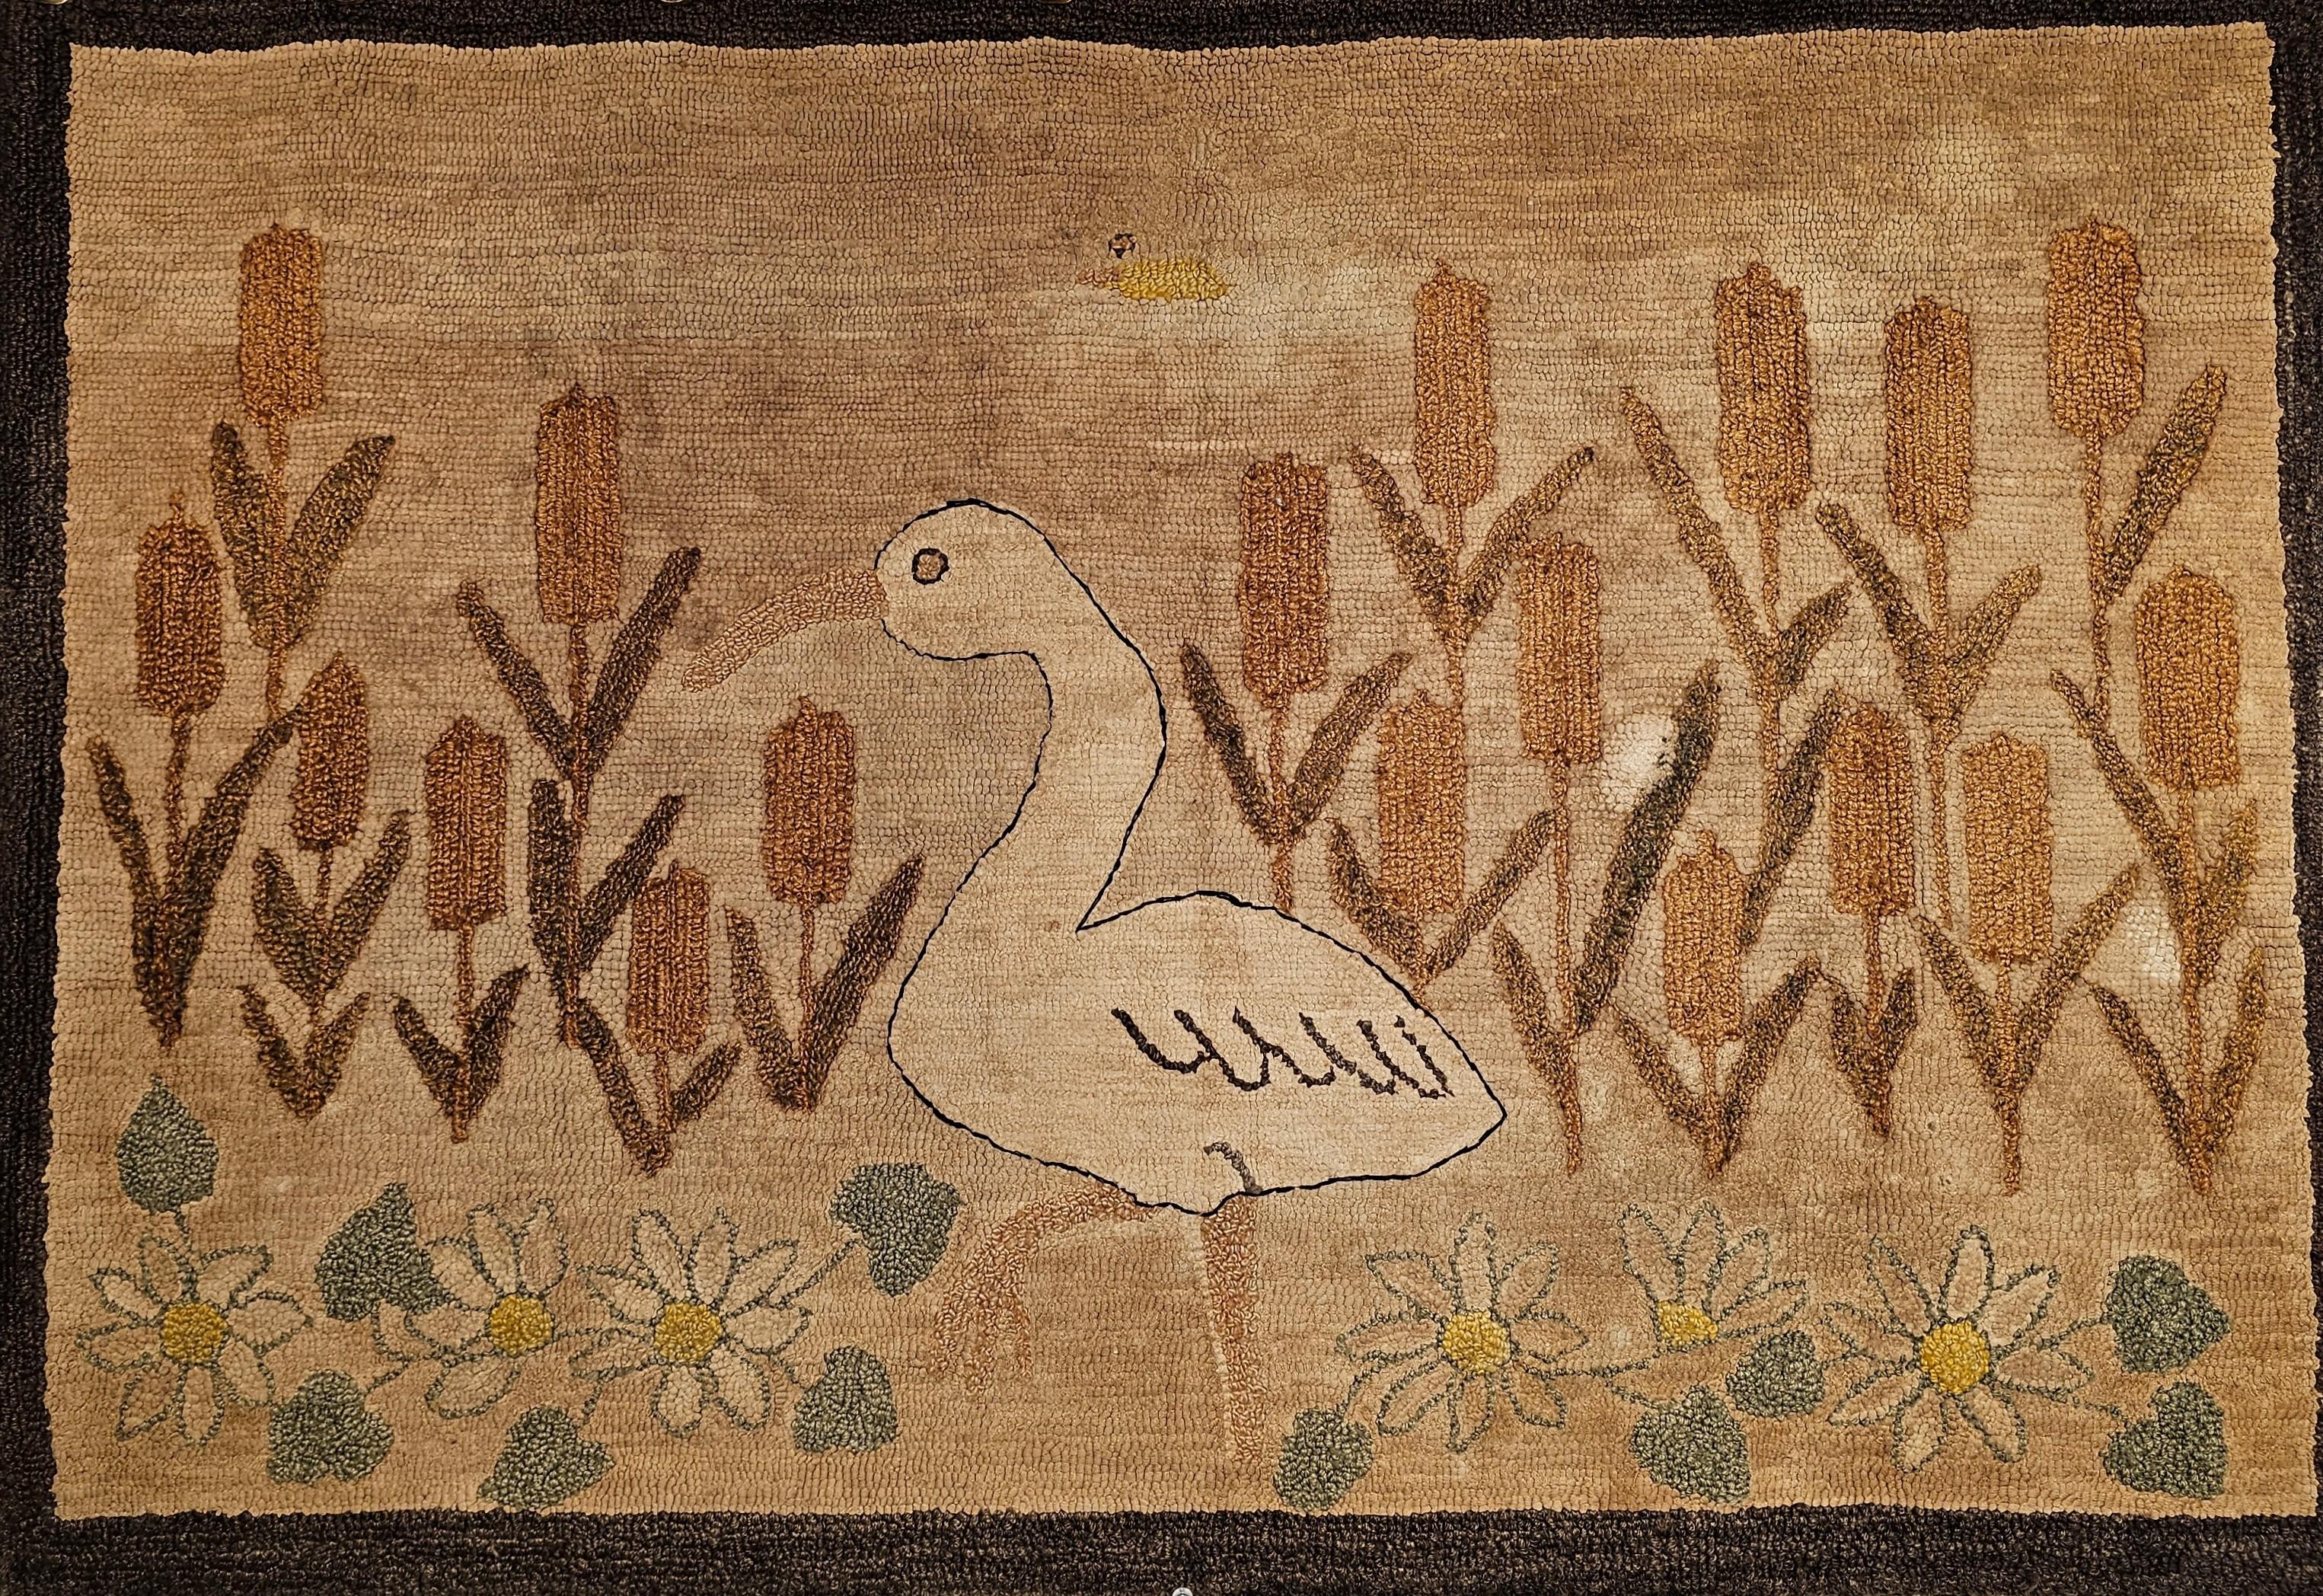 Handgeknüpfter Teppich aus dem frühen 20. Jahrhundert mit einem wunderschönen Vogel- und Blumenmuster in Erdtönen.  Der Teppich hat eines der reizvollsten Designs, die wir bei amerikanischen Vintage-Handknüpfteppichen gesehen haben.  Wir sind